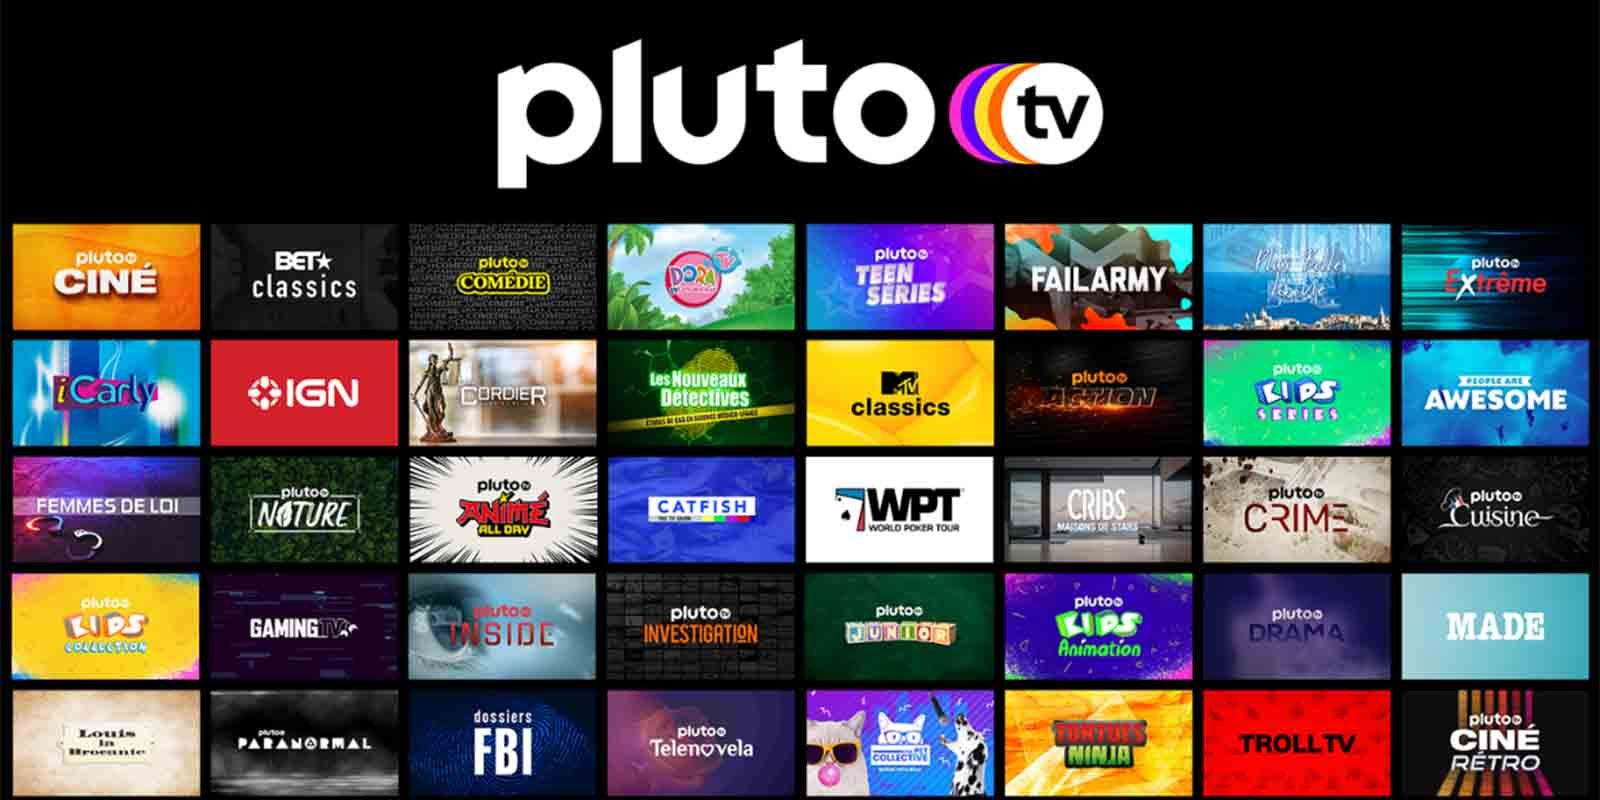 TOP apps y plataformas para VER películas y series GRATIS online en MÉXICO  